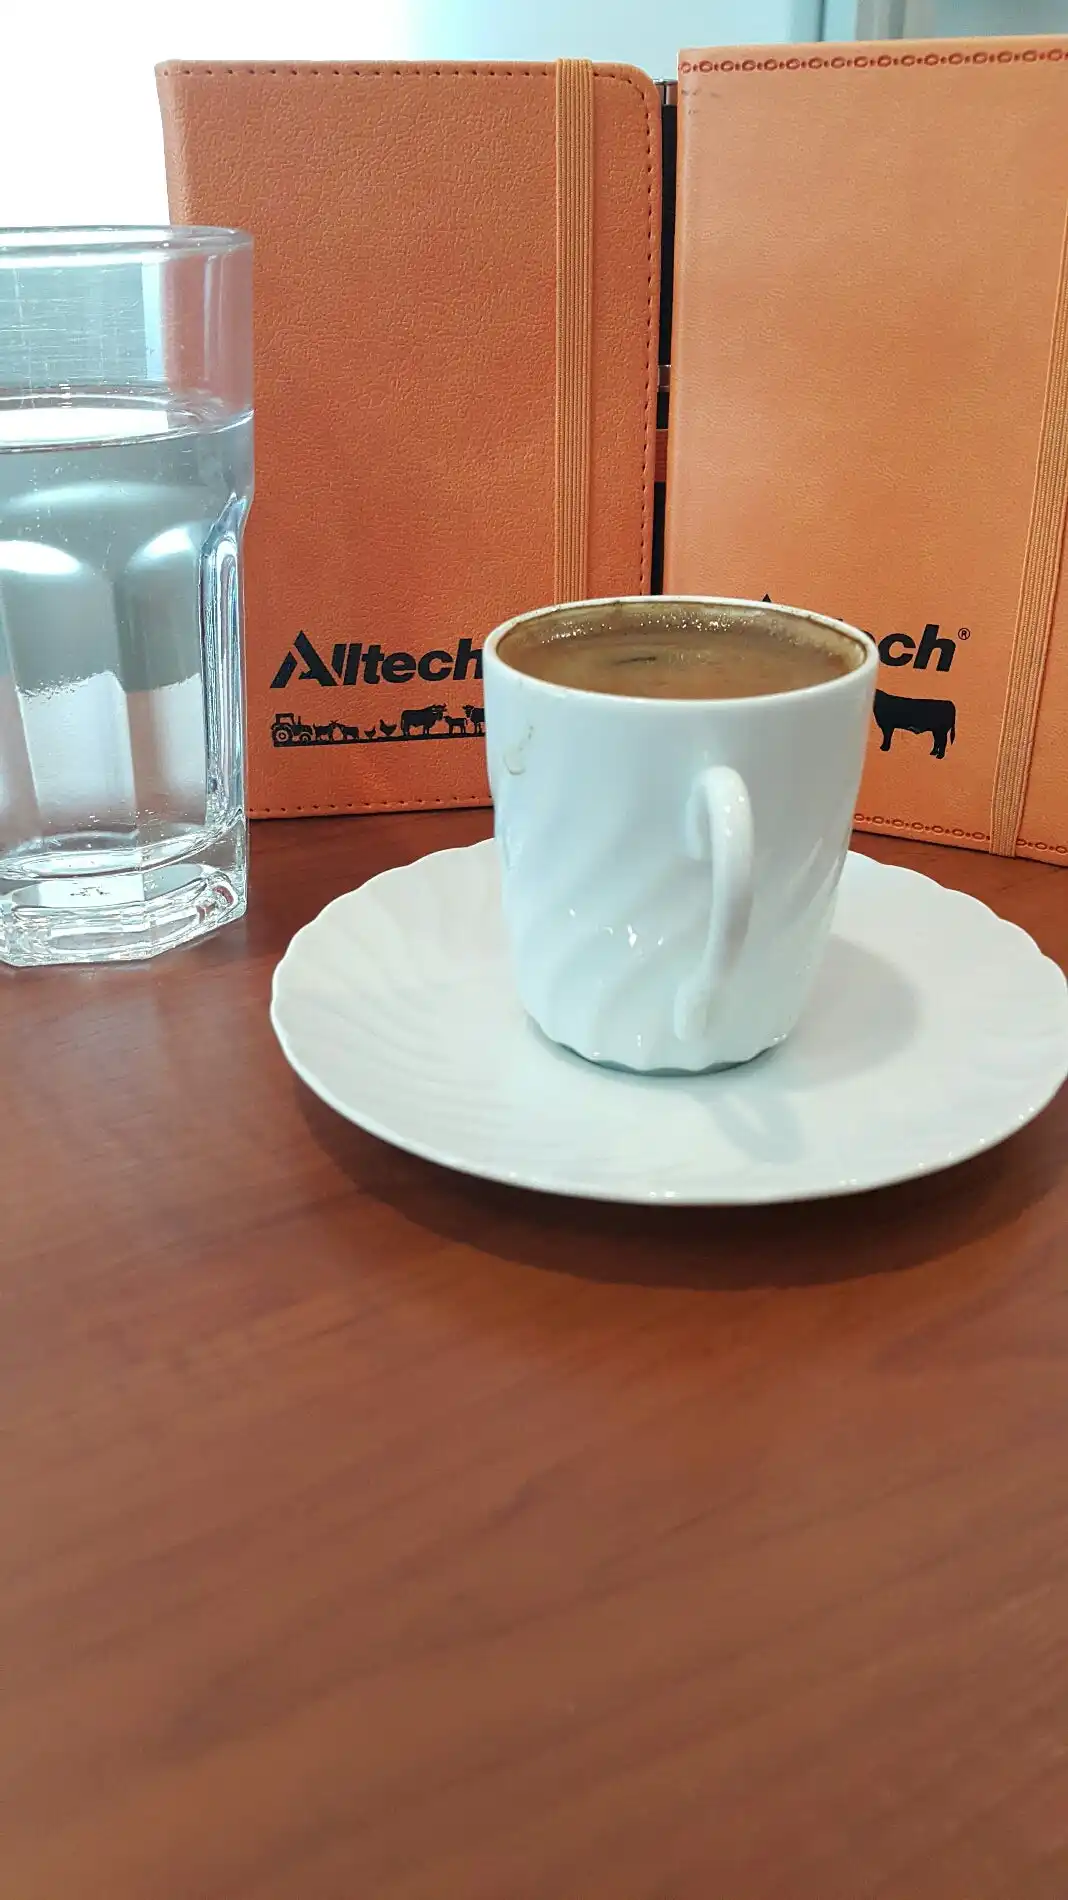 Alltech Café Bistro